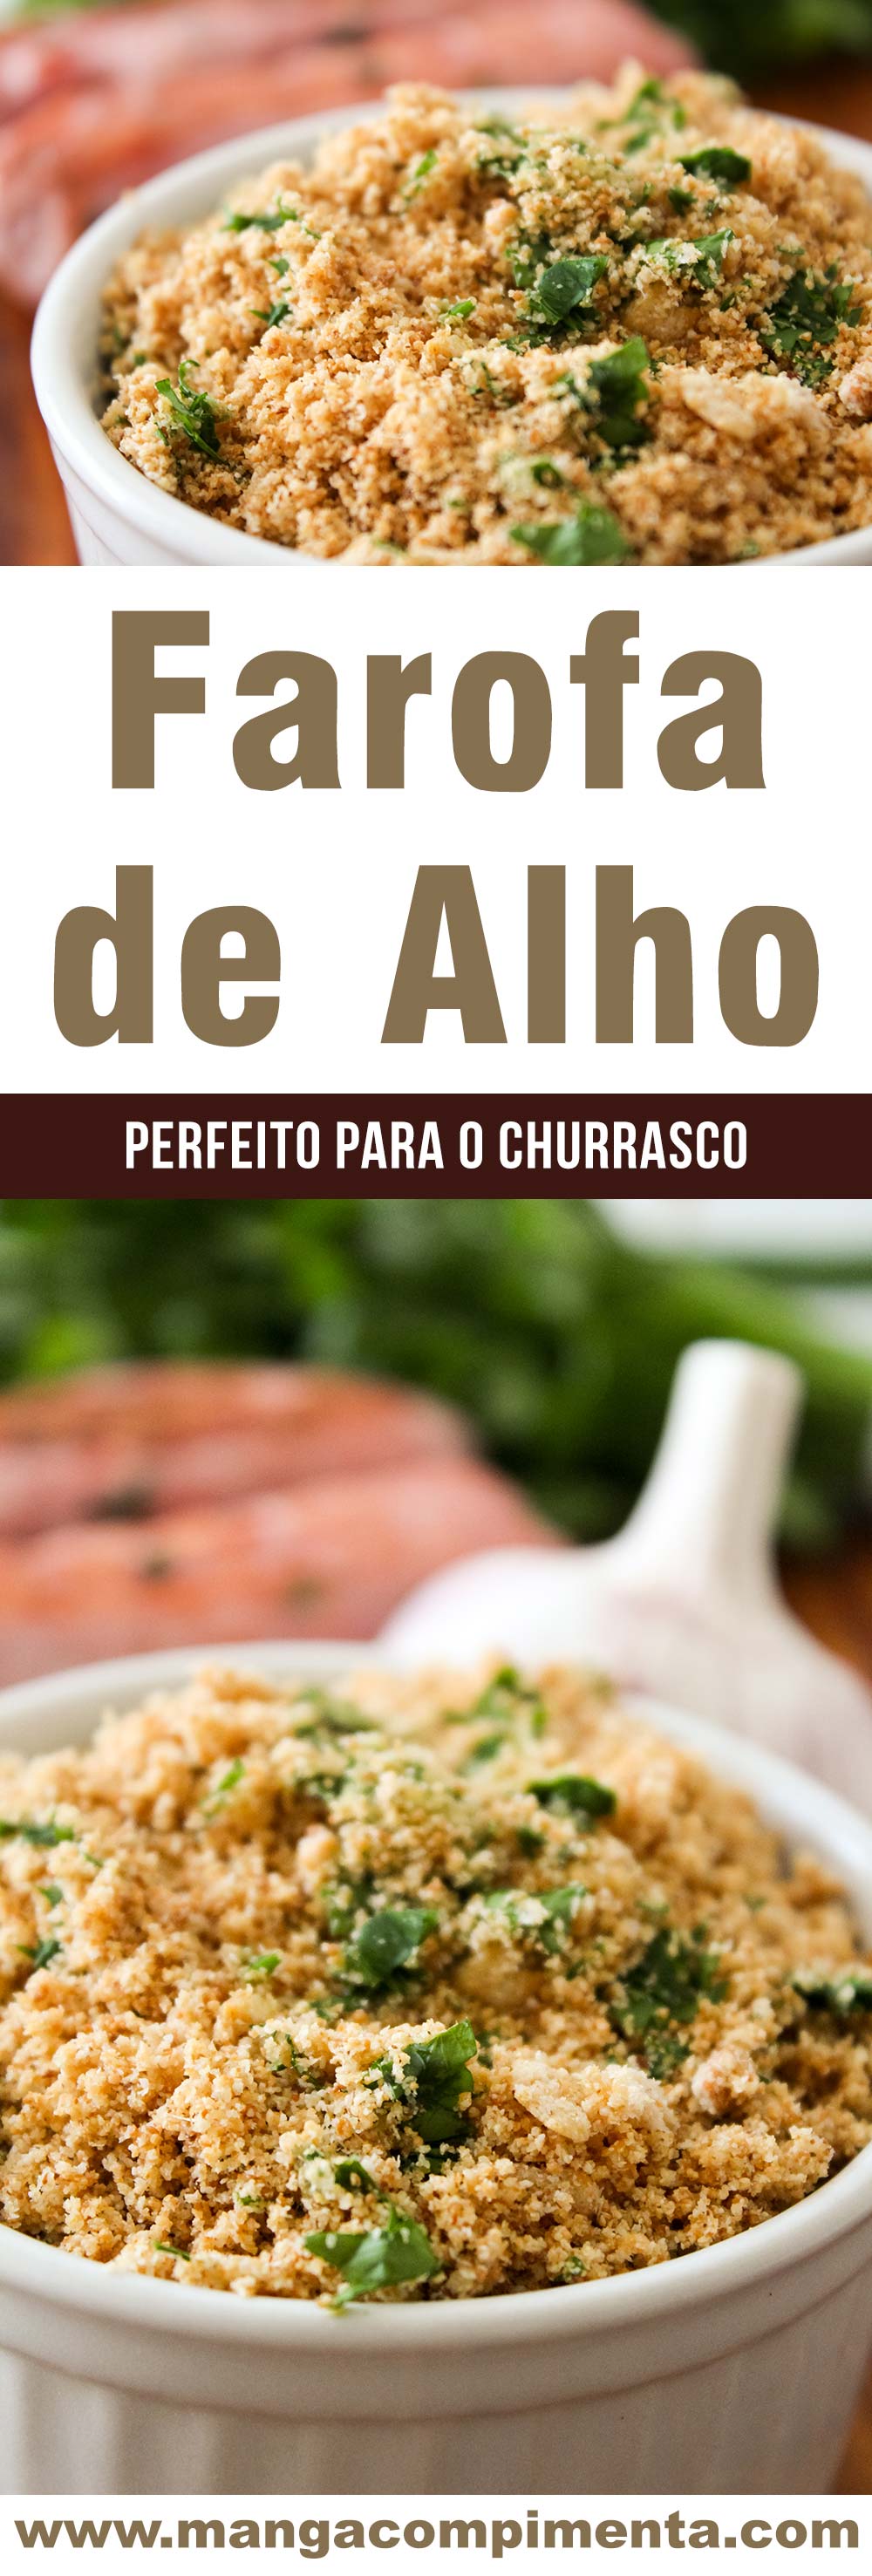 Farofa de Alho - super fácil de fazer, perfeito para o churrasco ou frango assado do final de semana!